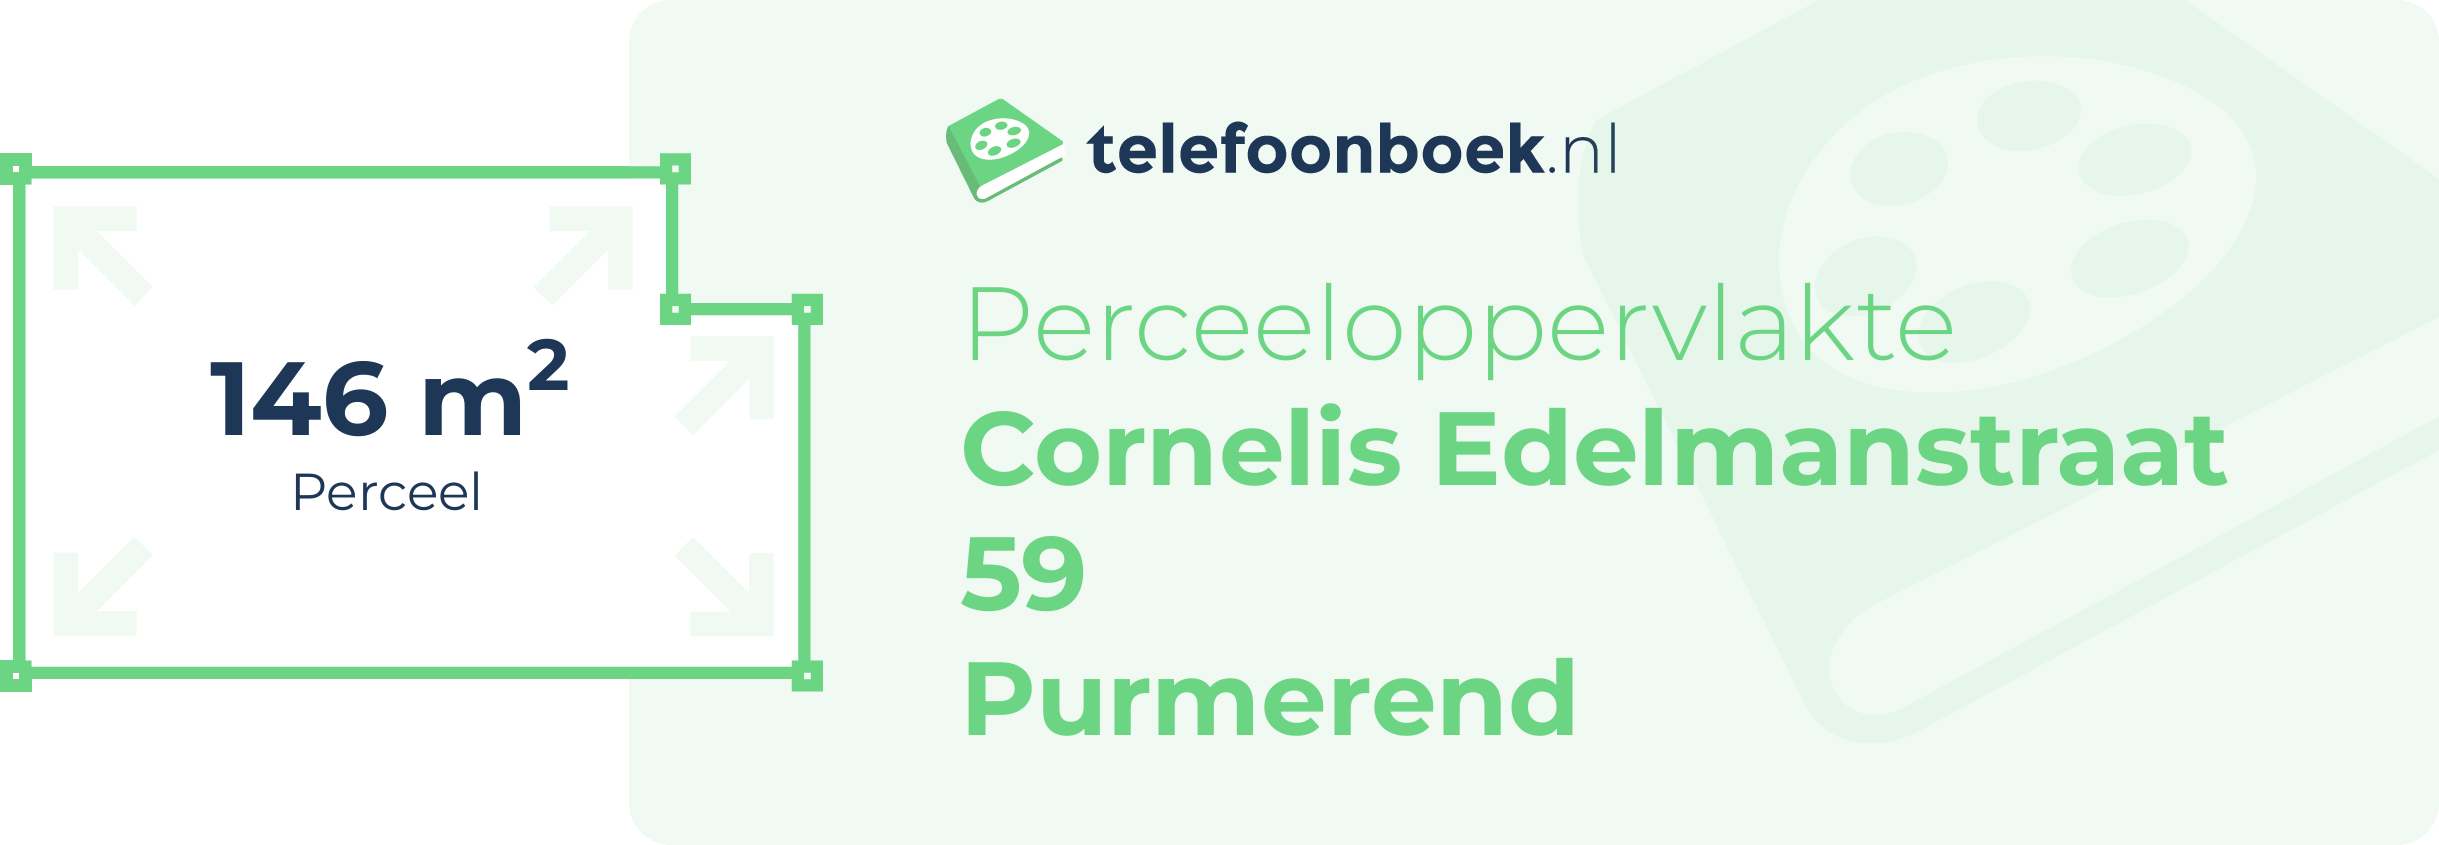 Perceeloppervlakte Cornelis Edelmanstraat 59 Purmerend